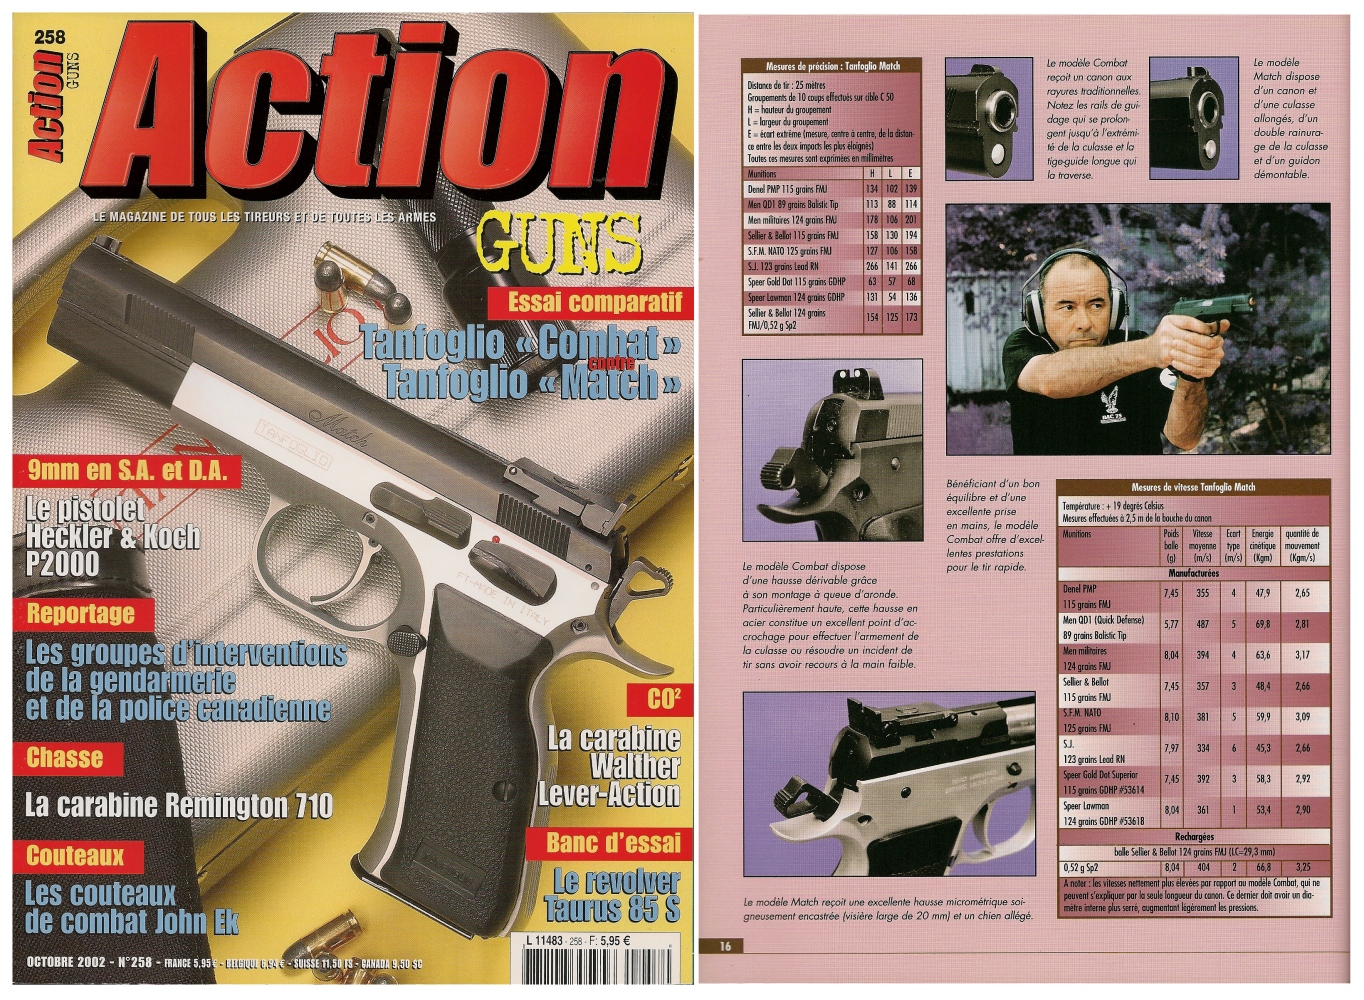 Le banc d’essai des pistolets Tanfoglio « Combat » et « Match » a été publié sur 7 pages dans le magazine Action Guns n°258 (octobre 2002).